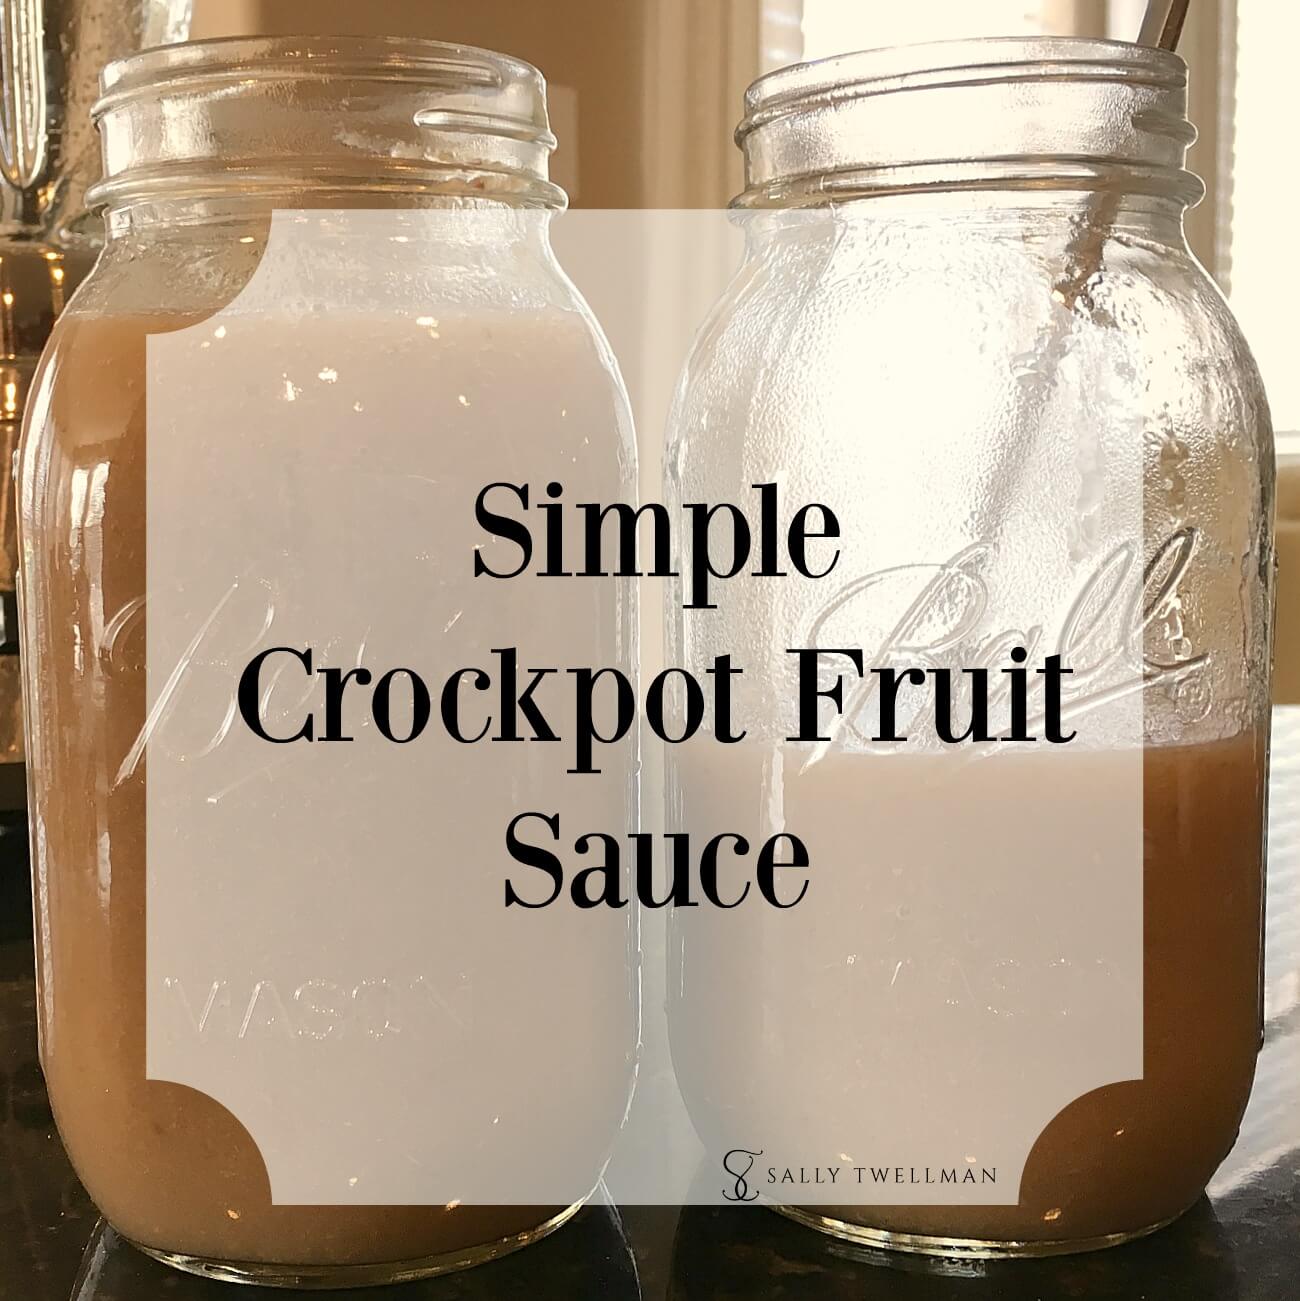 Simple crockpot fruit sauce